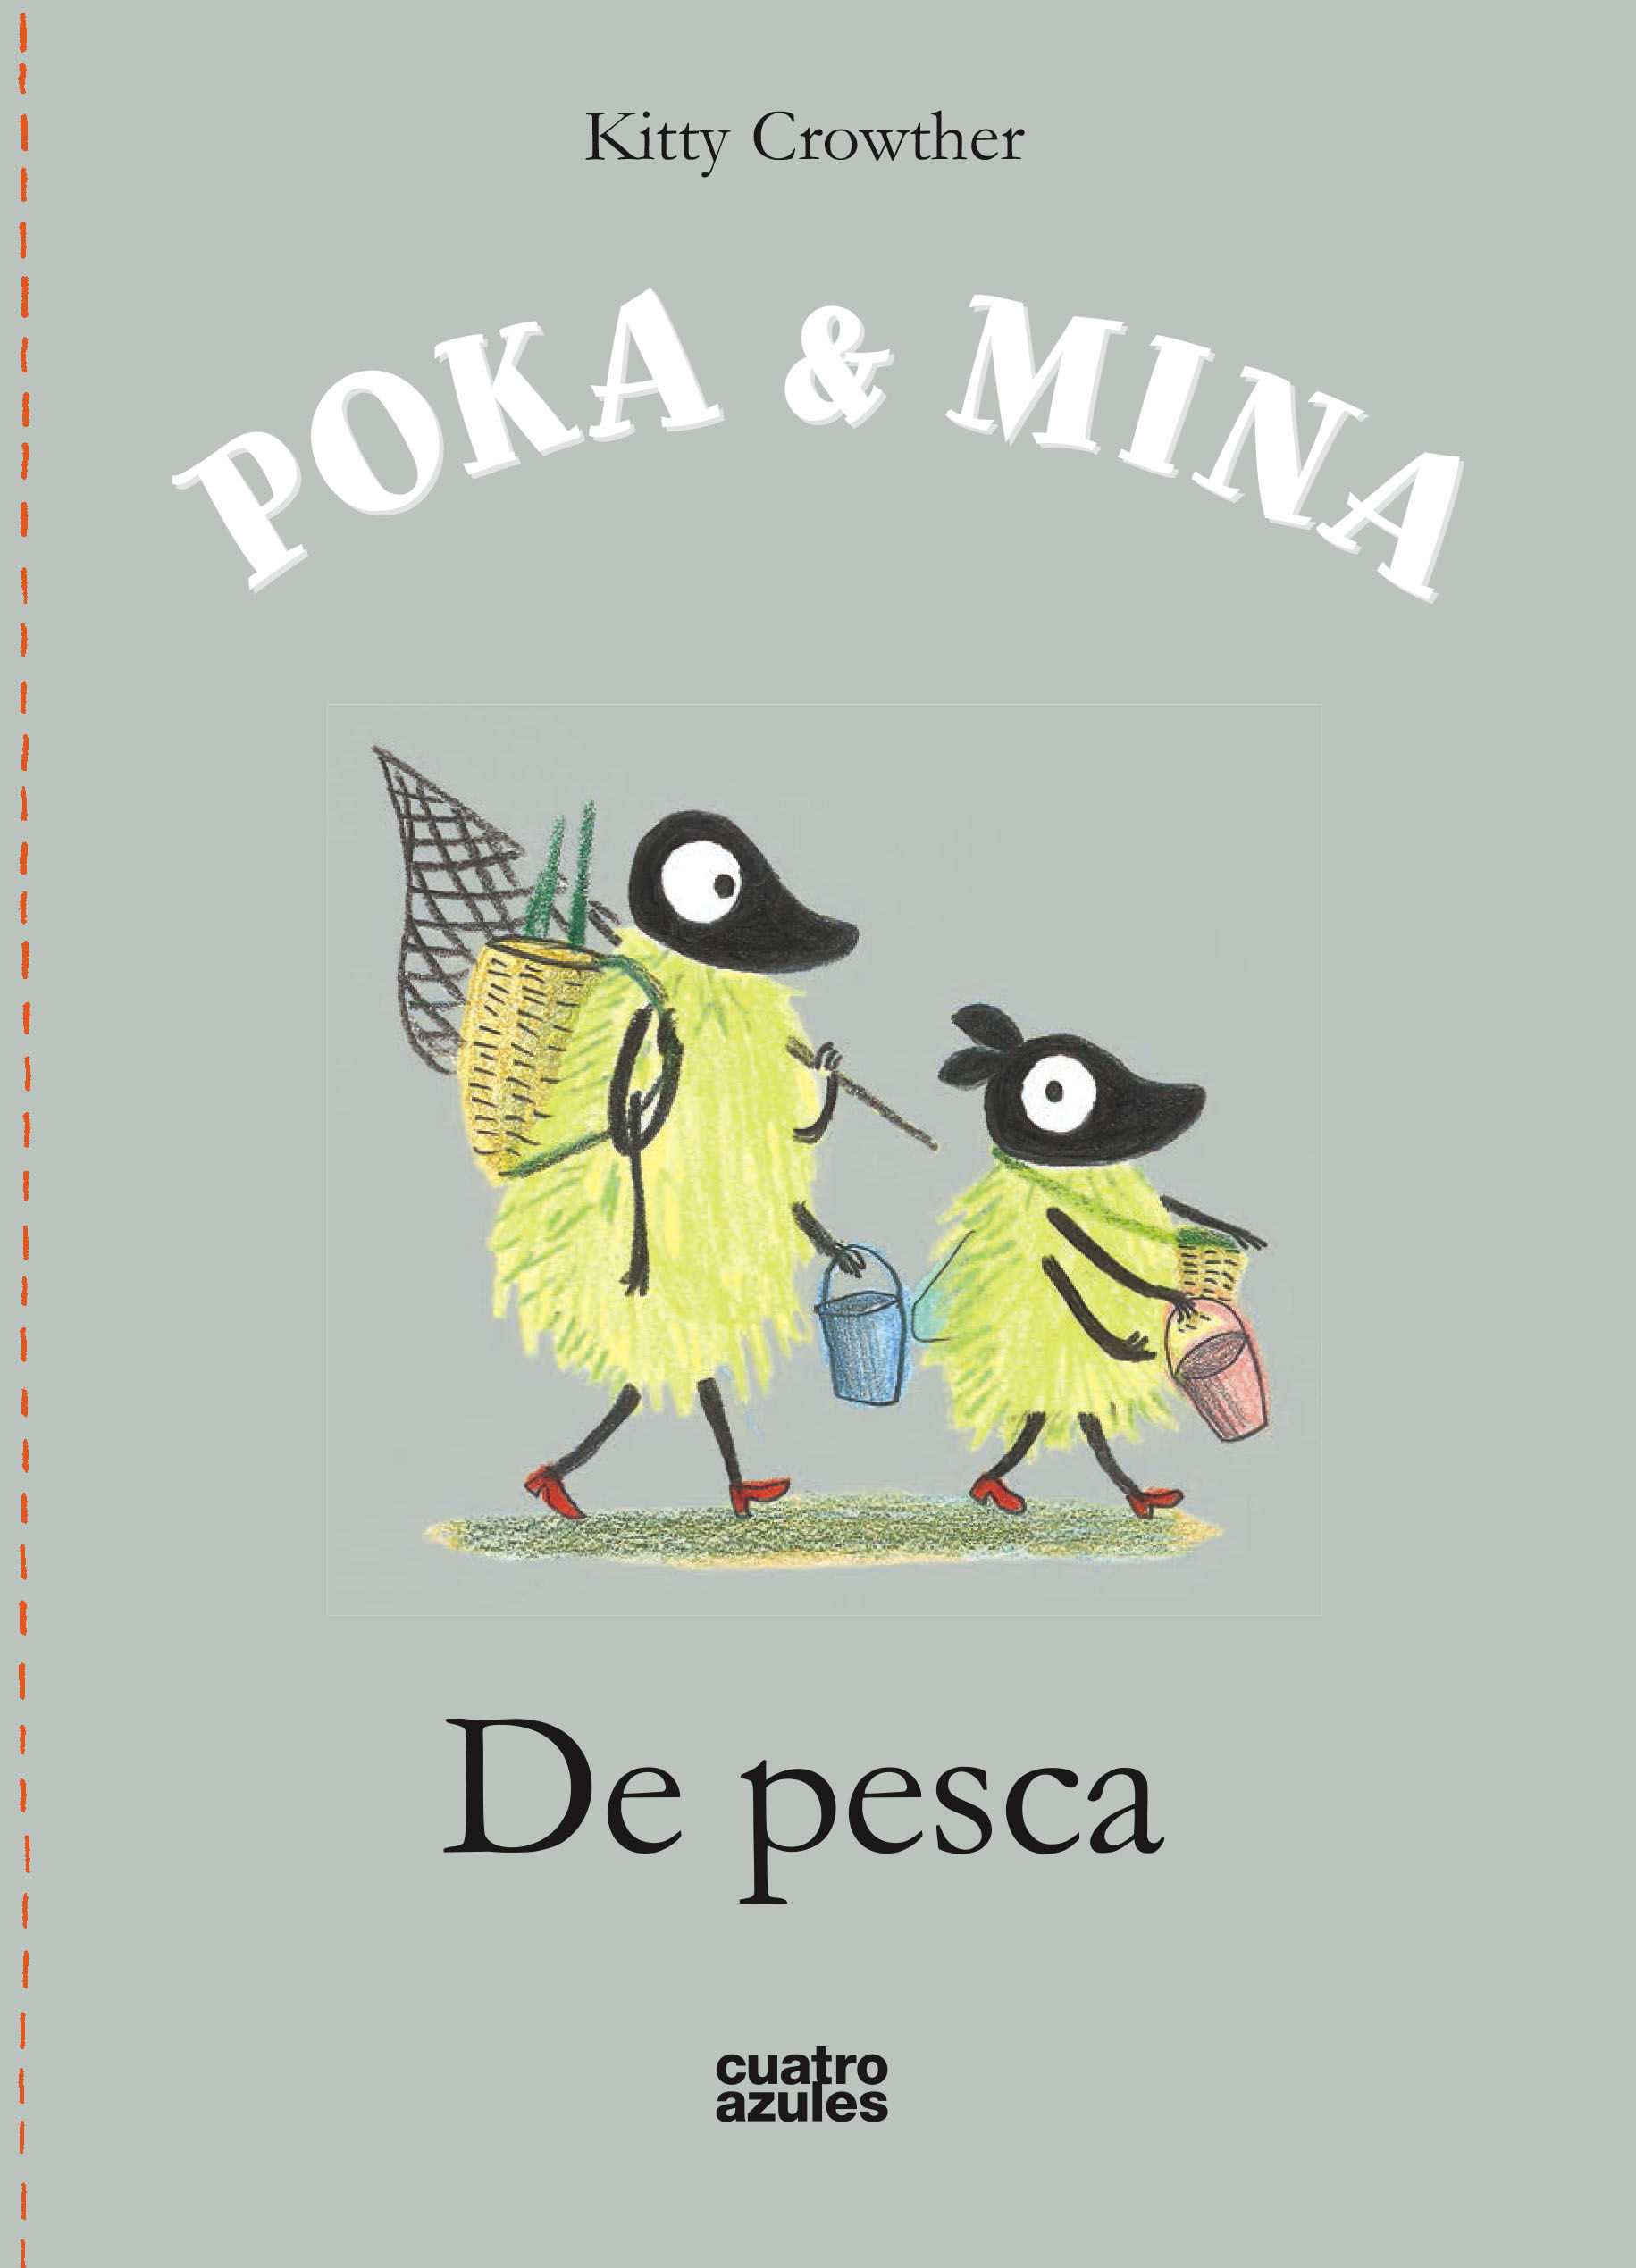 POKA & MINA: DE PESCA. DE PESCA